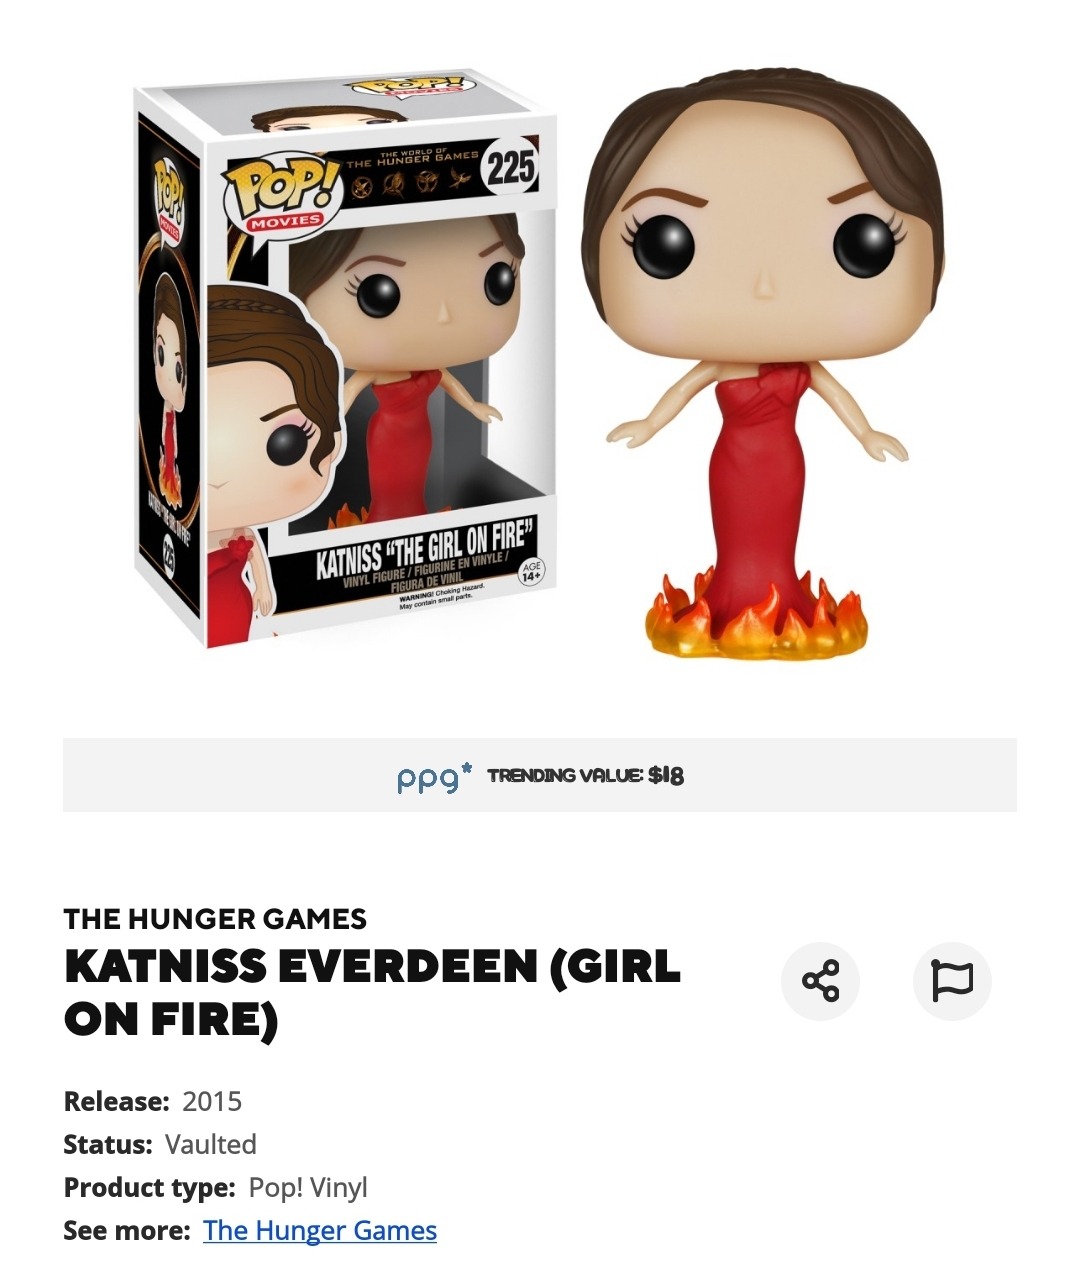 Katniss Everdeen “The Girl on Fire” funko pop, Don’t